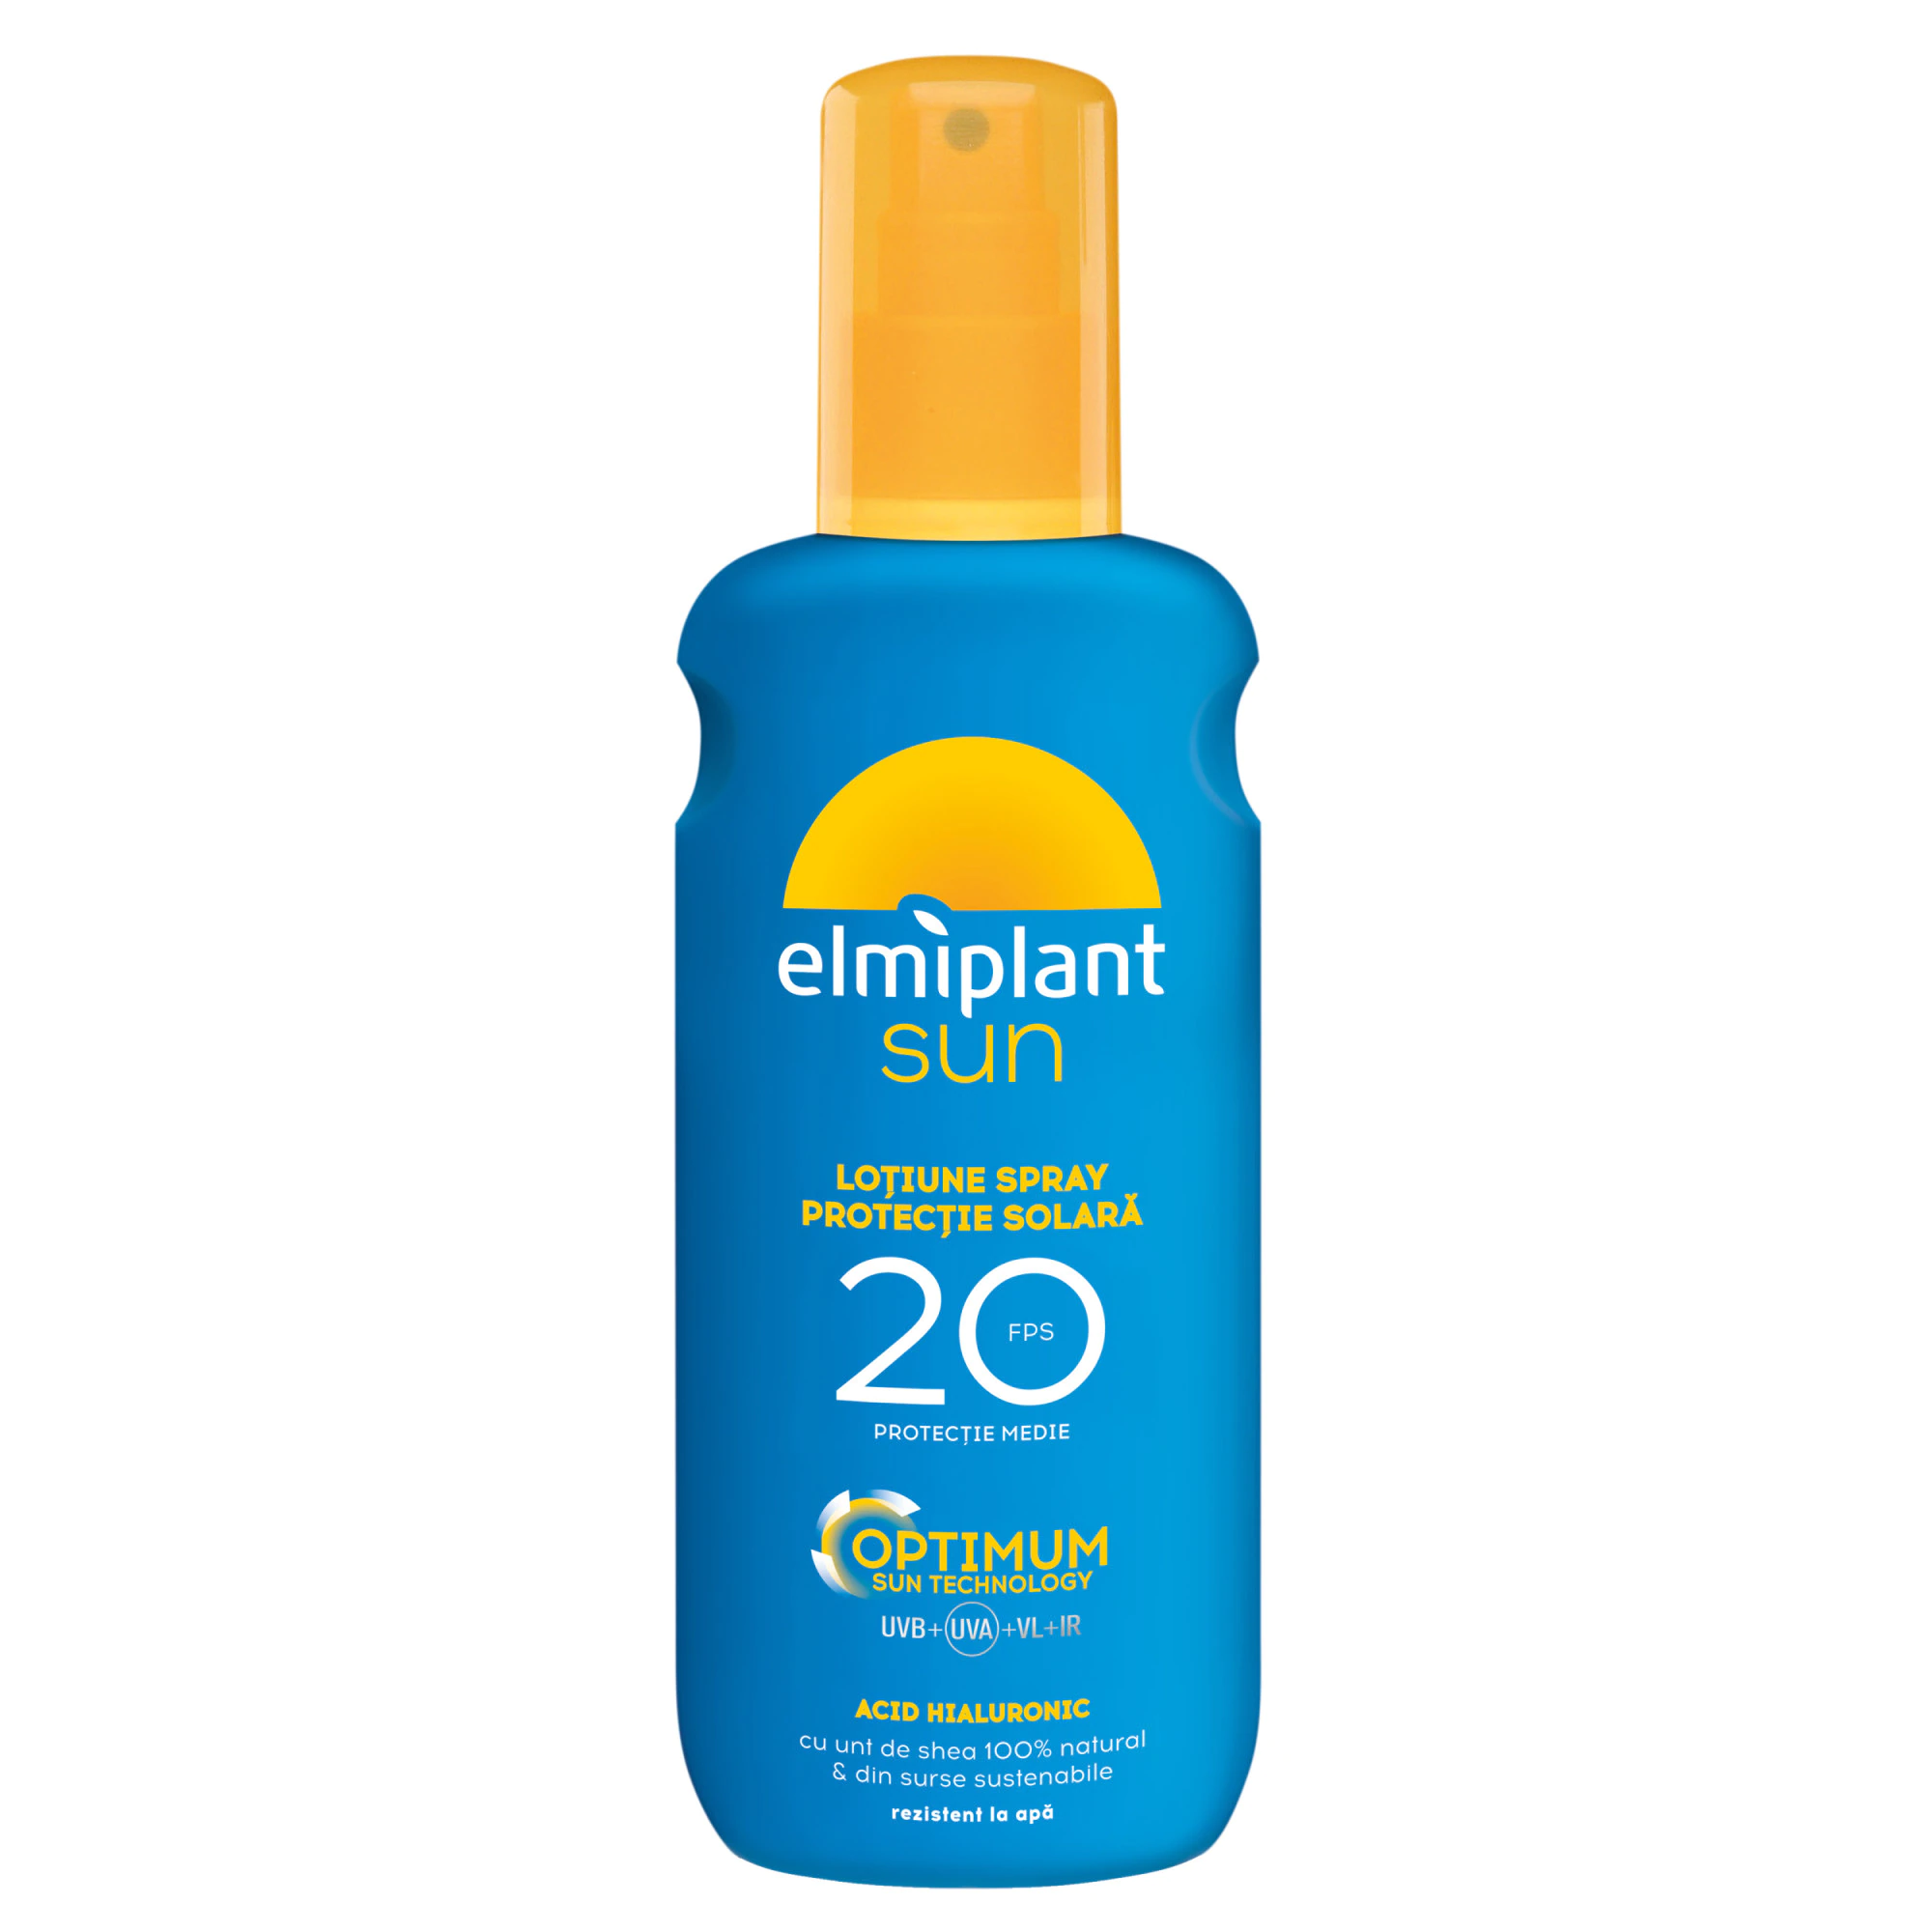 Lotiune spray cu protectie solara medie SPF 20 Optimum Sun, 200 ml, Elmiplant